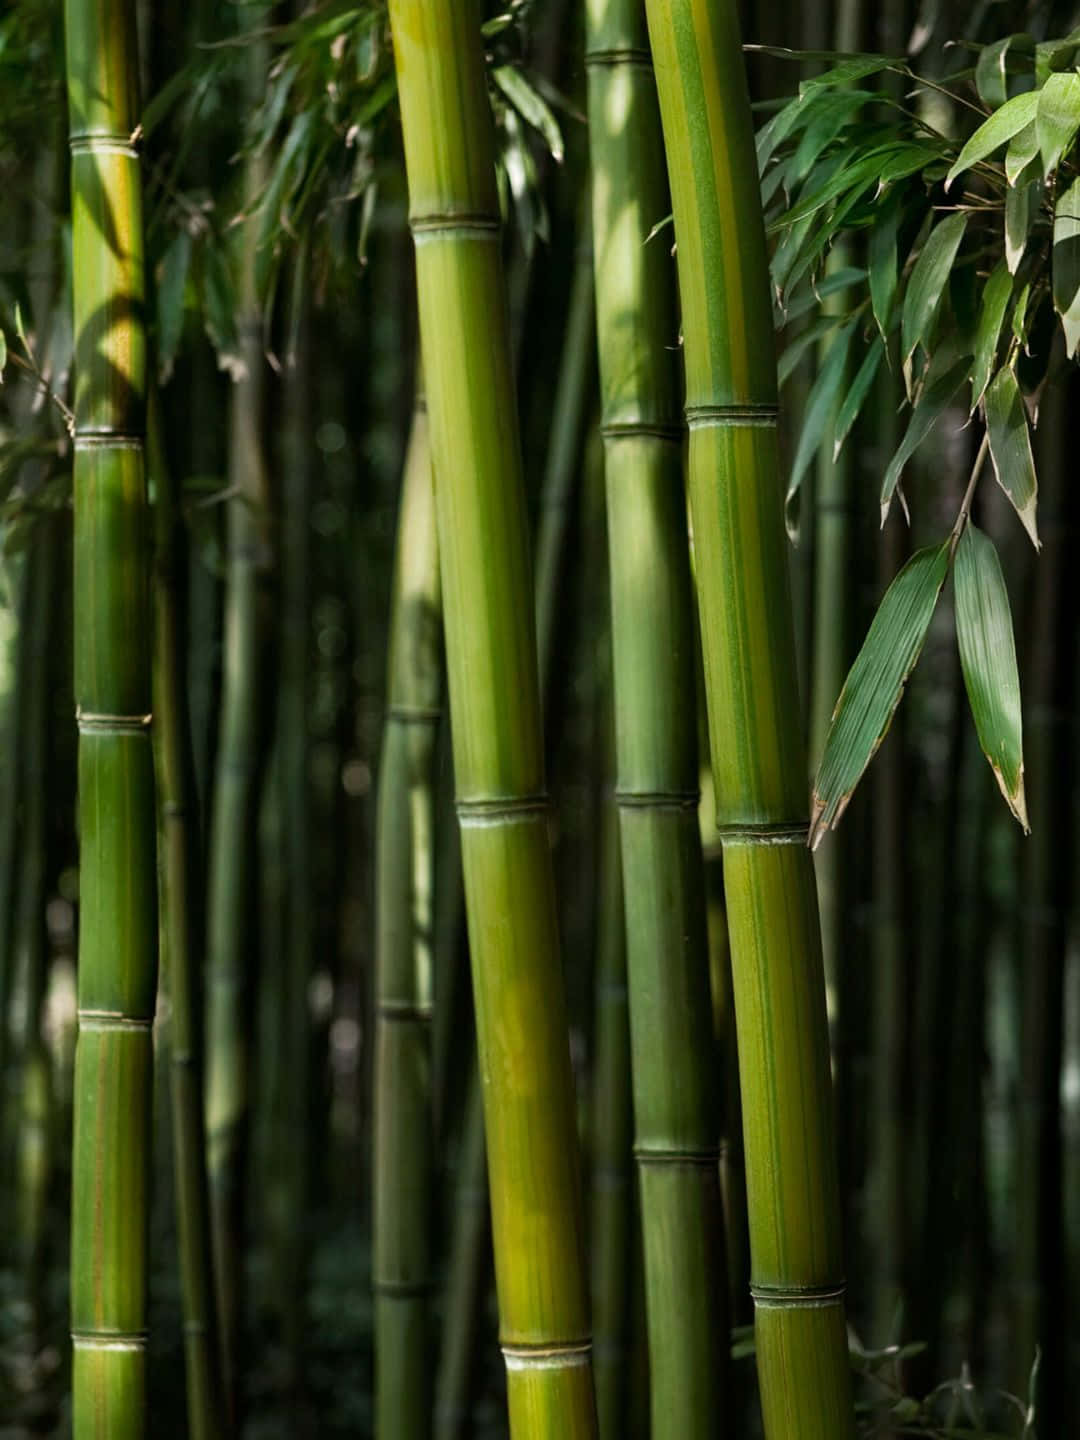 Sfondodi Bambù 1440p Con Steli E Foglie Molto Scuri Di Colore Verde